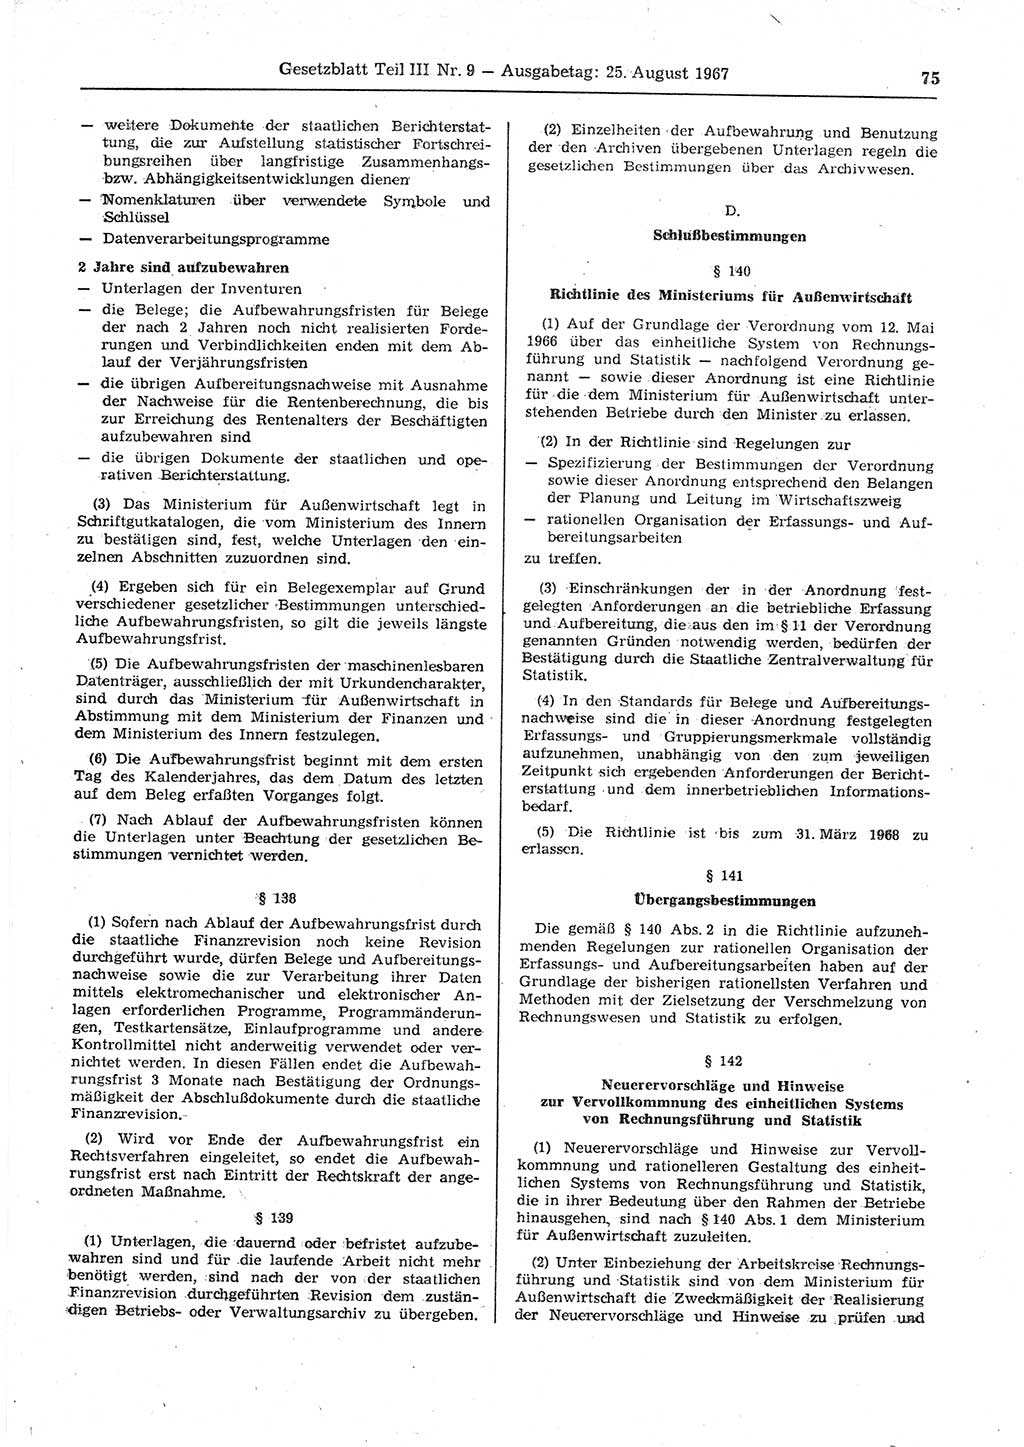 Gesetzblatt (GBl.) der Deutschen Demokratischen Republik (DDR) Teil ⅠⅠⅠ 1967, Seite 75 (GBl. DDR ⅠⅠⅠ 1967, S. 75)